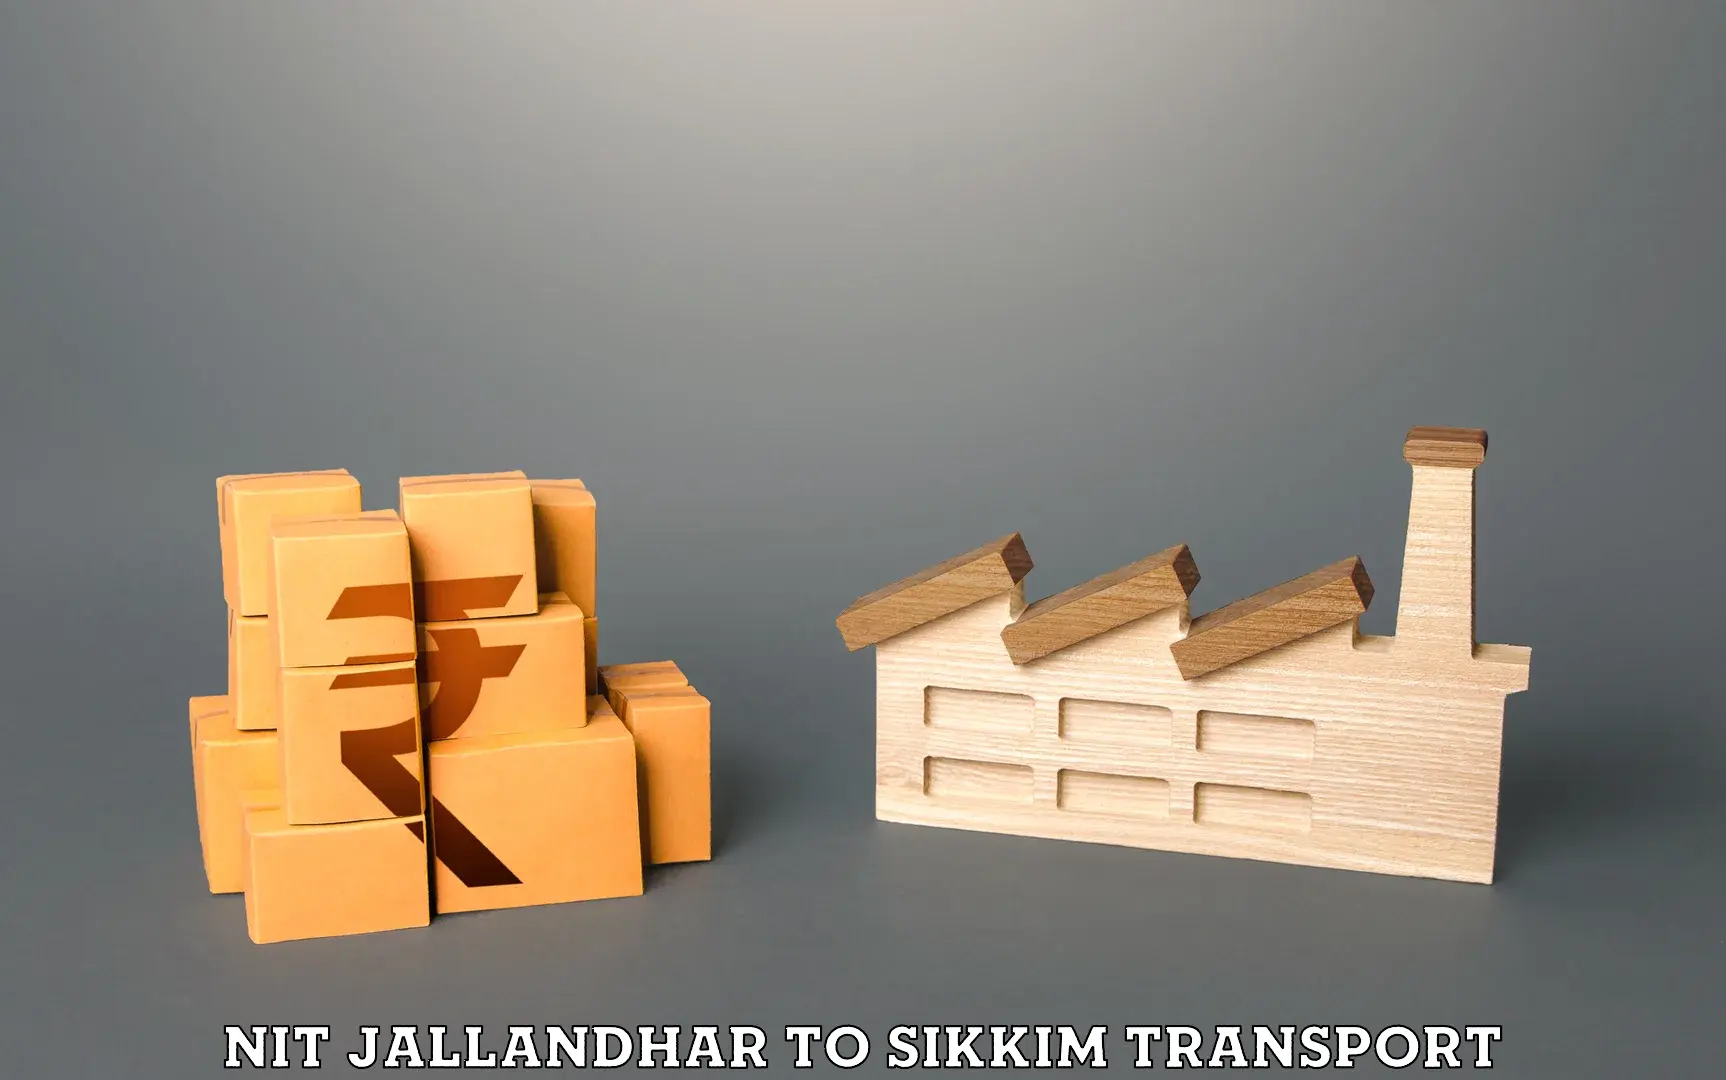 Nearest transport service NIT Jallandhar to North Sikkim